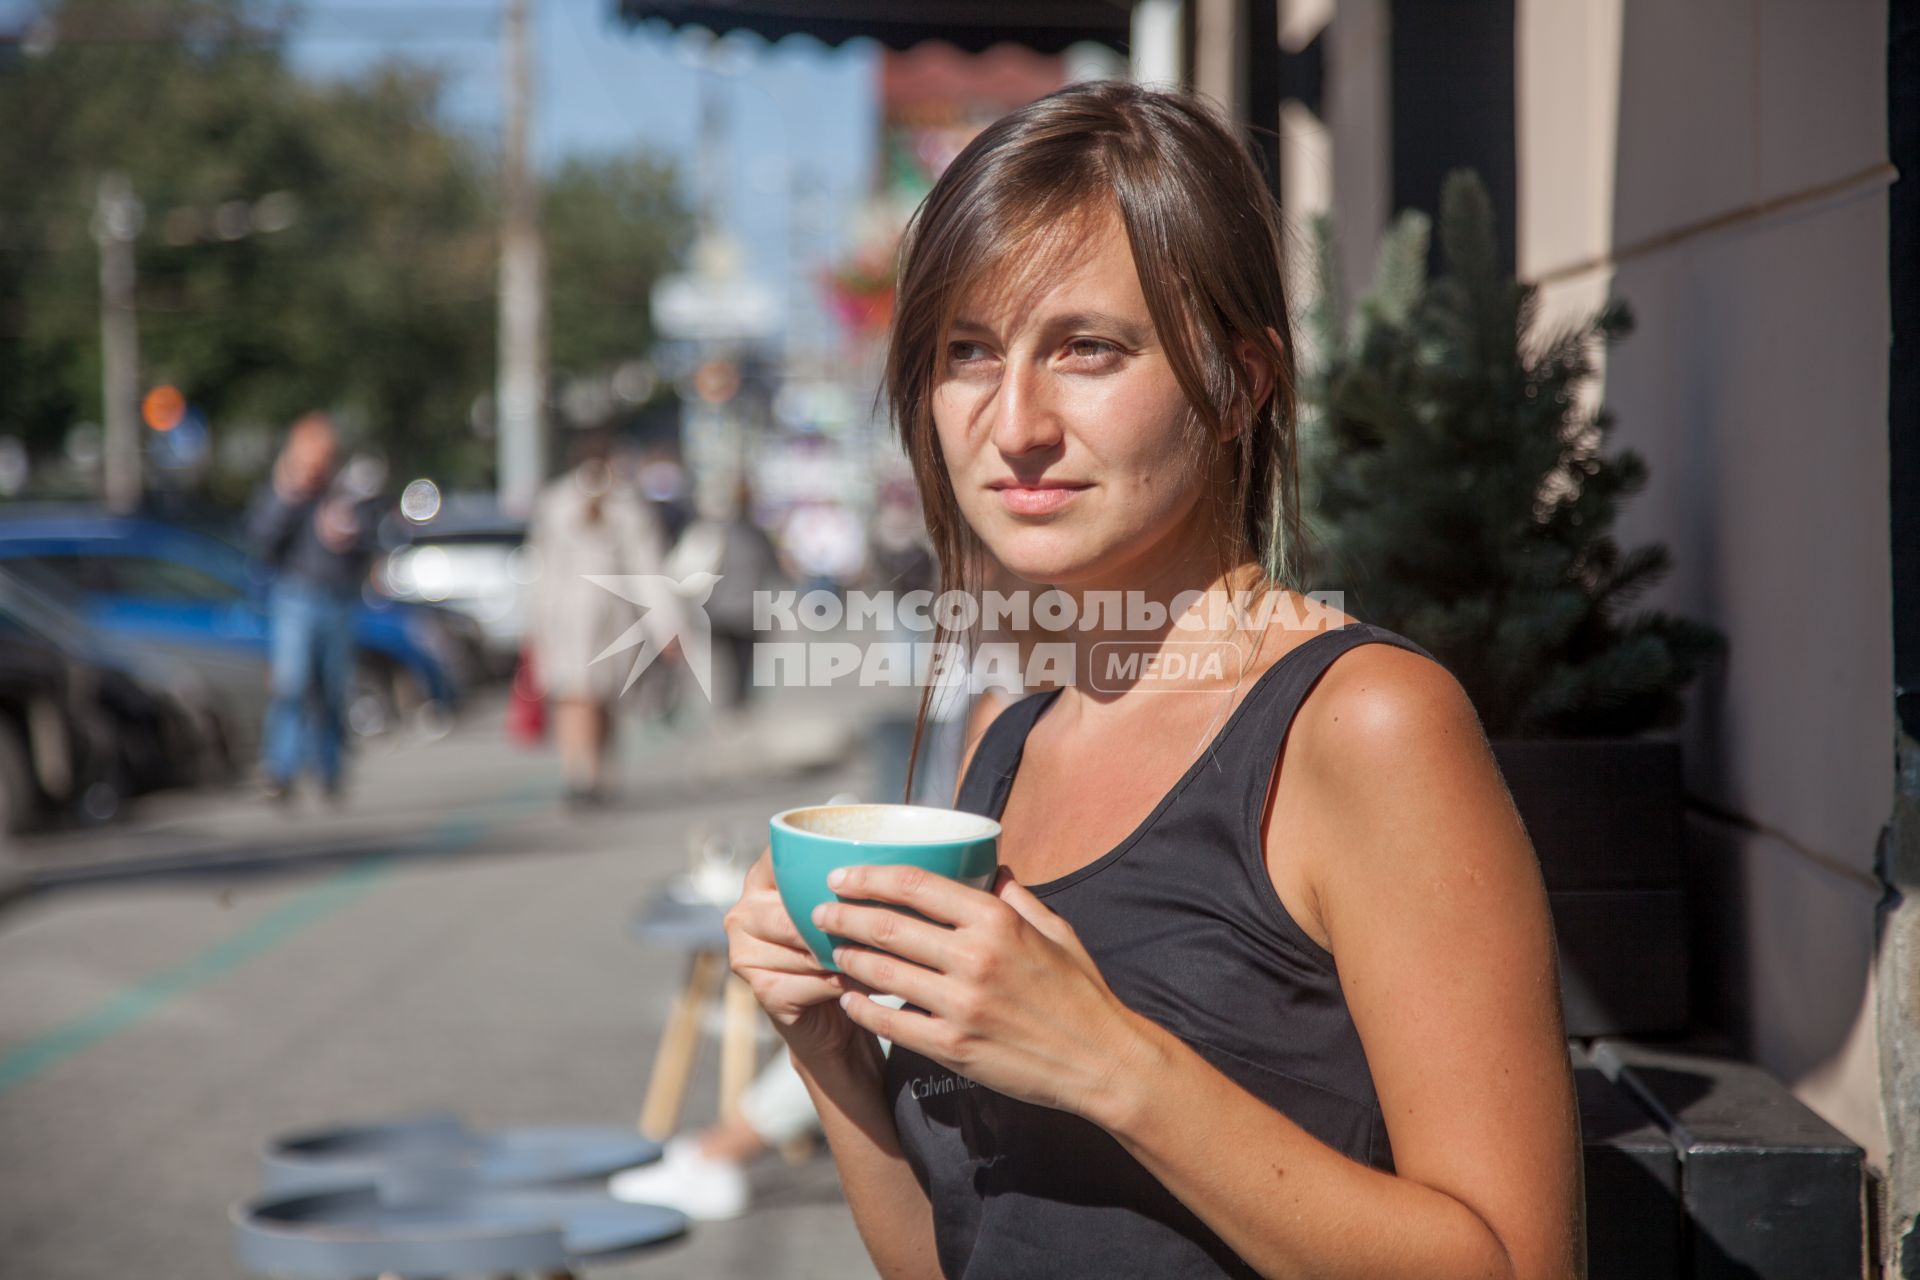 Пермь. Девушка пьет чай в кафе.